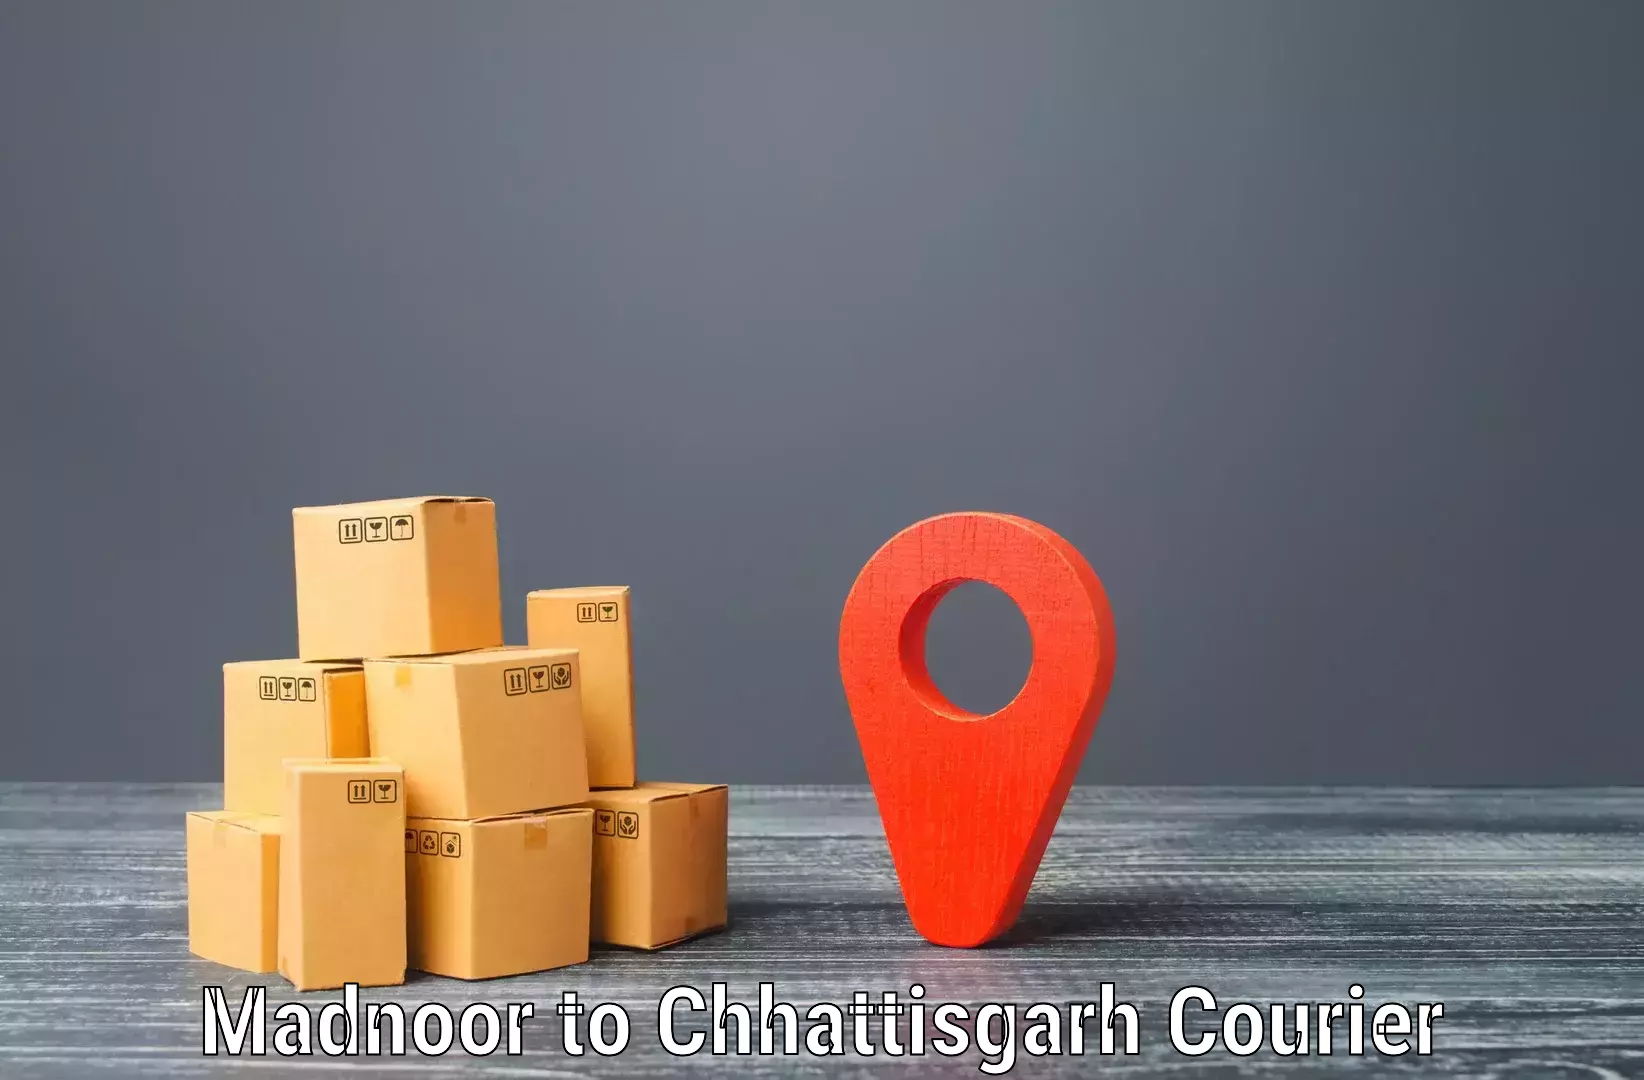 Urgent courier needs Madnoor to Raigarh Chhattisgarh